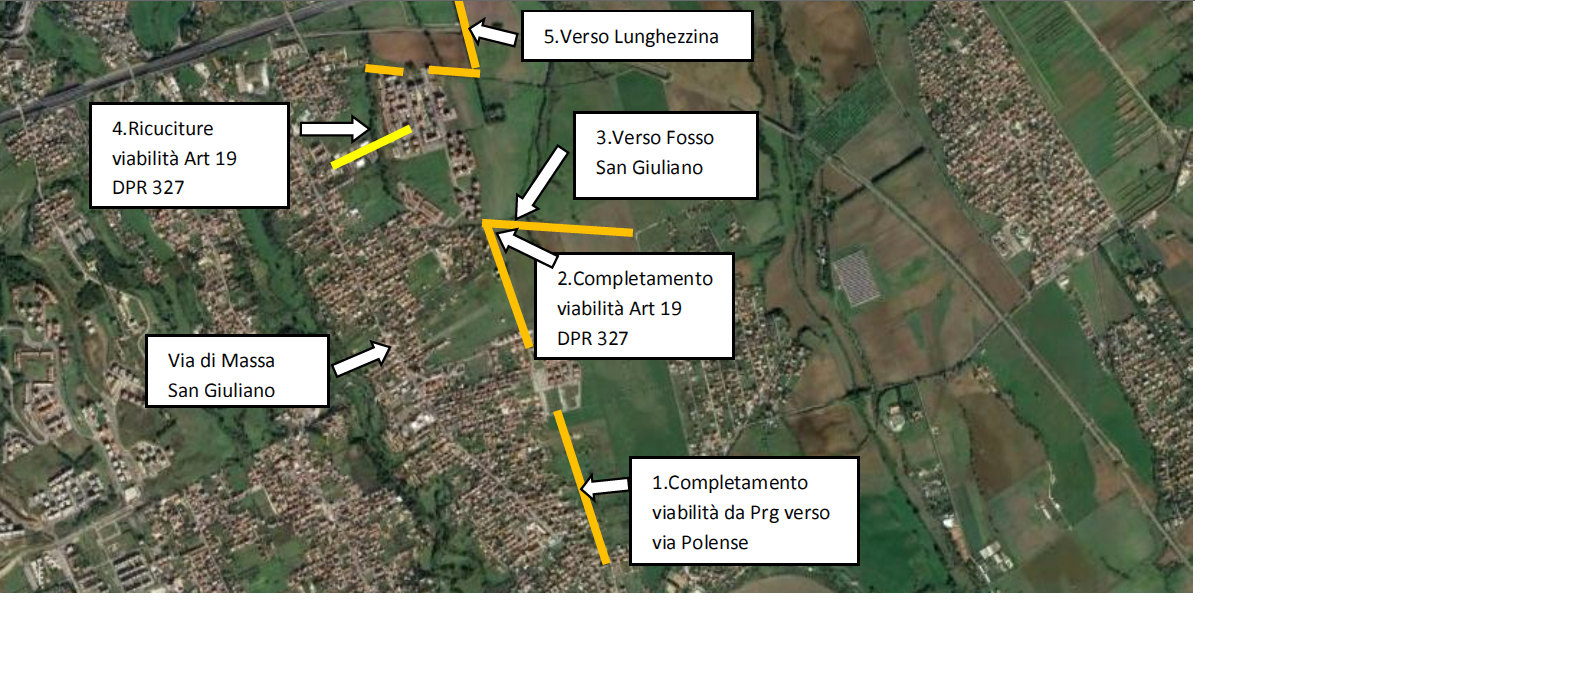 Al momento stai visualizzando Completamento Viabilità Castelverde  Lunghezzina 1-2